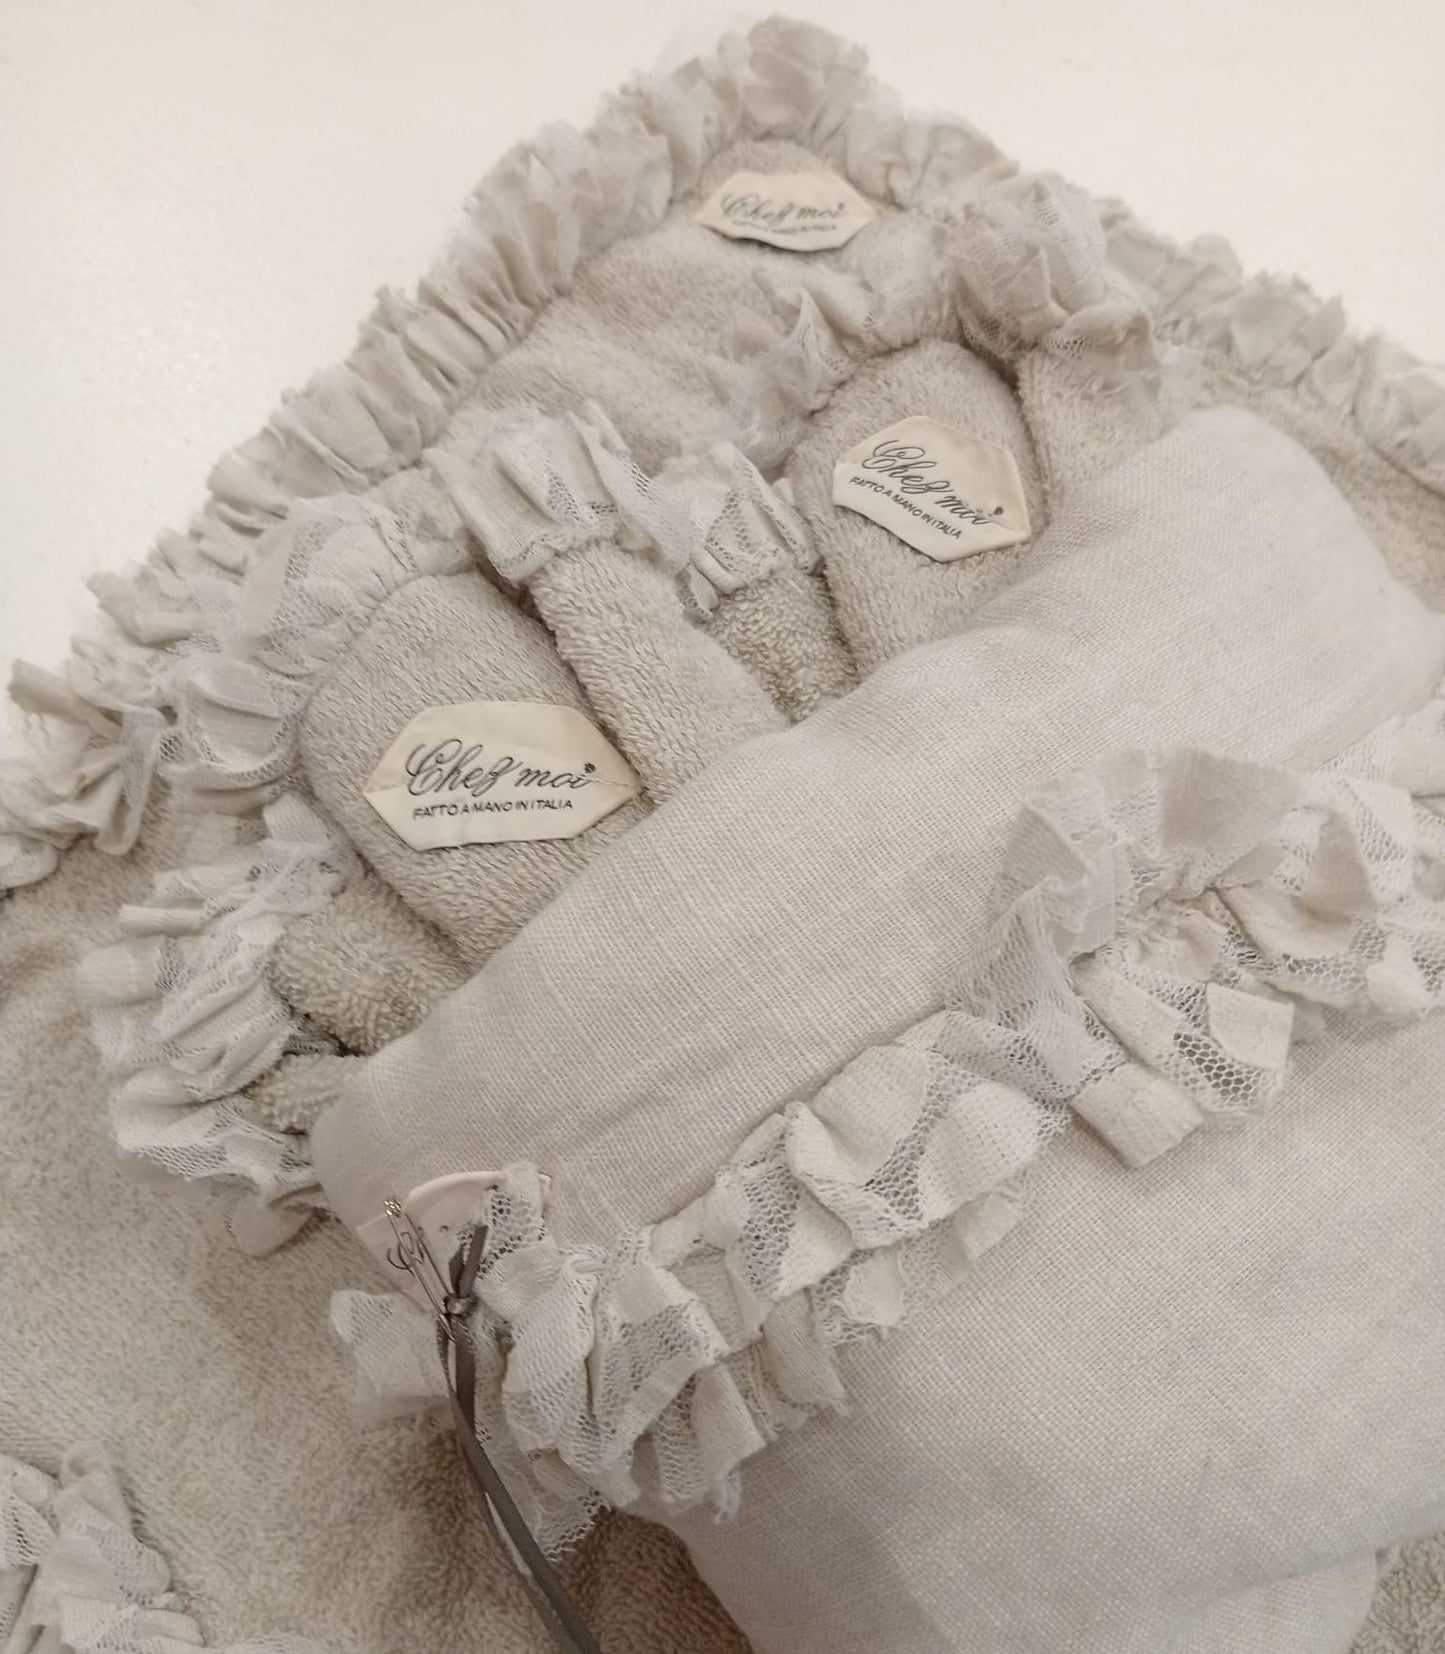 Lavette set da 3 asciugamani bagno con elegante sacchetto di lino, colore: Argilla con pizzo, tessuti pregiati, 100% Made in Italy - Chez Moi